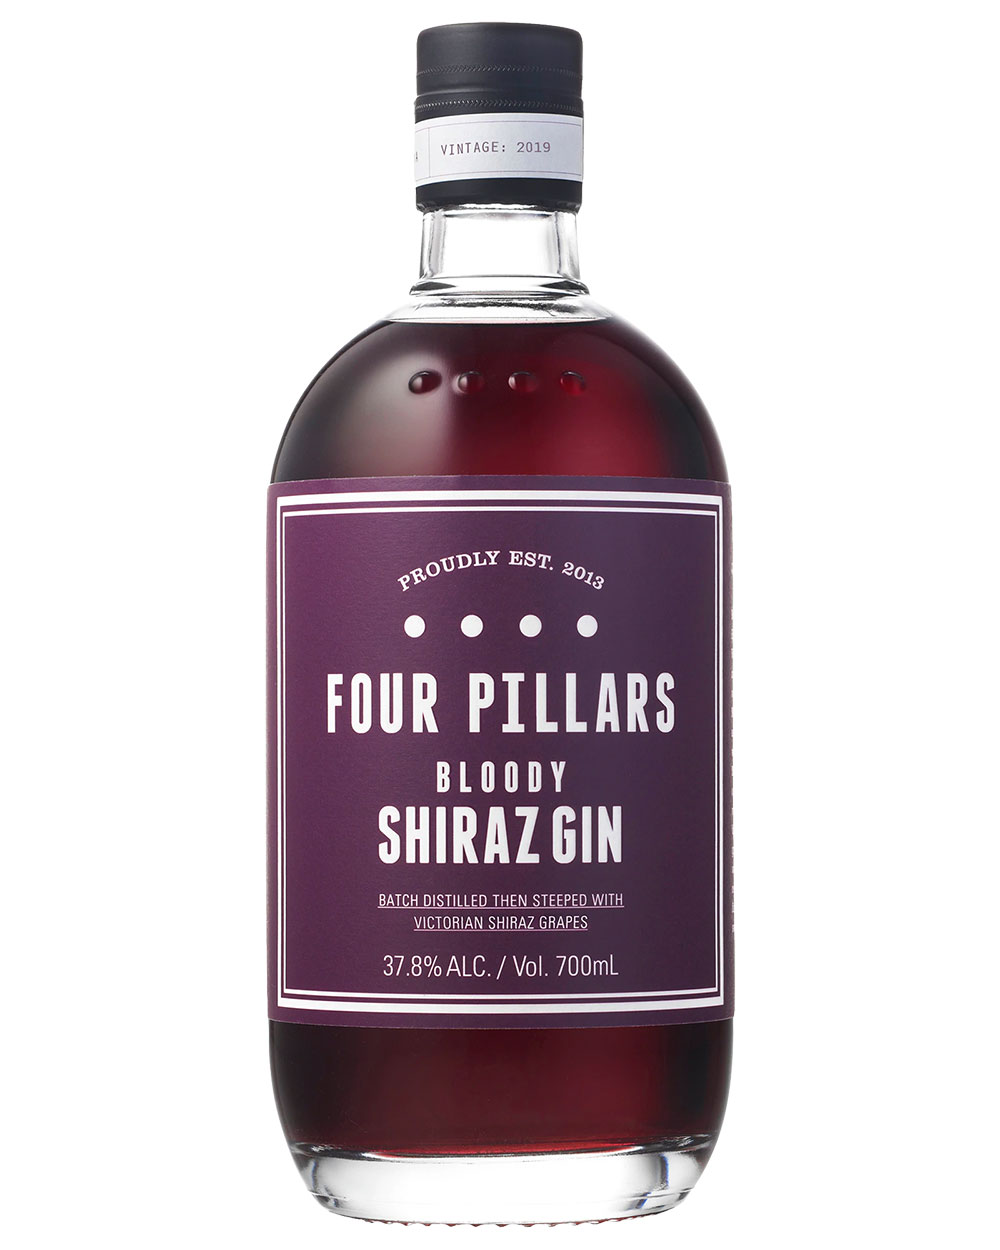 Four Pillars Bloody Shiraz Gin.